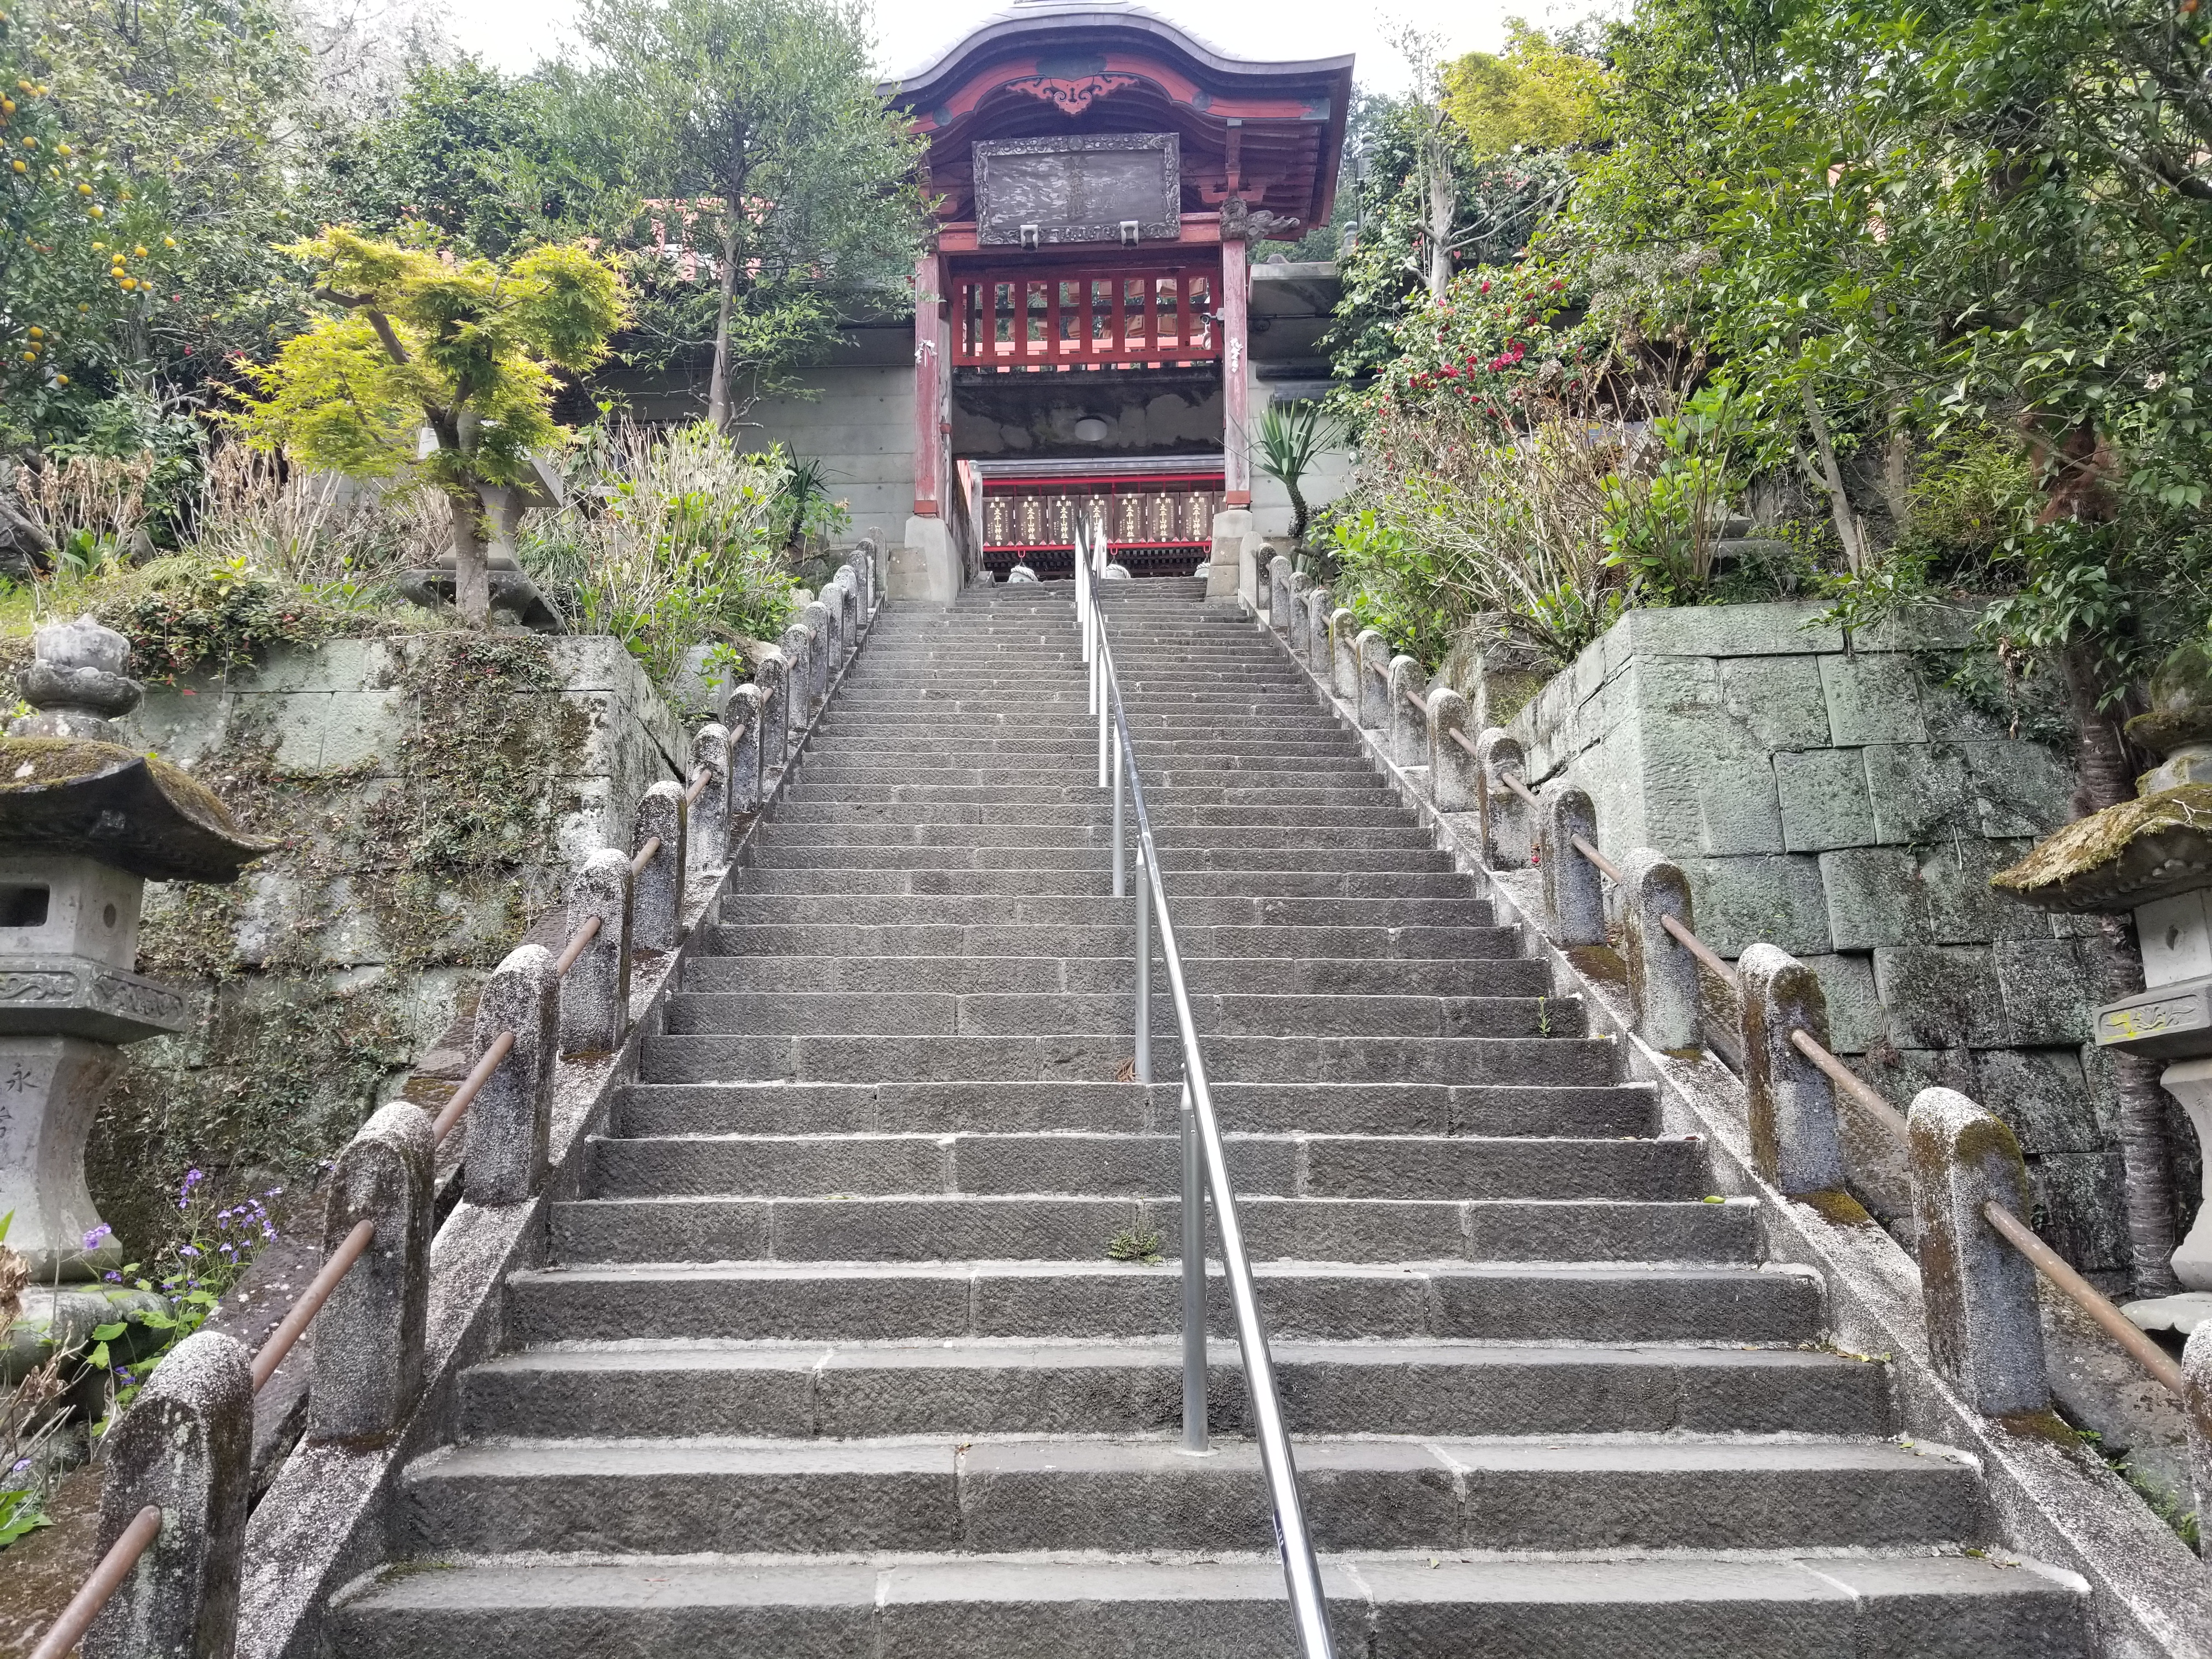 ナイトフラワーガーデンと大平山神社と雨引観音バスツアーのおすすめポイント詳細